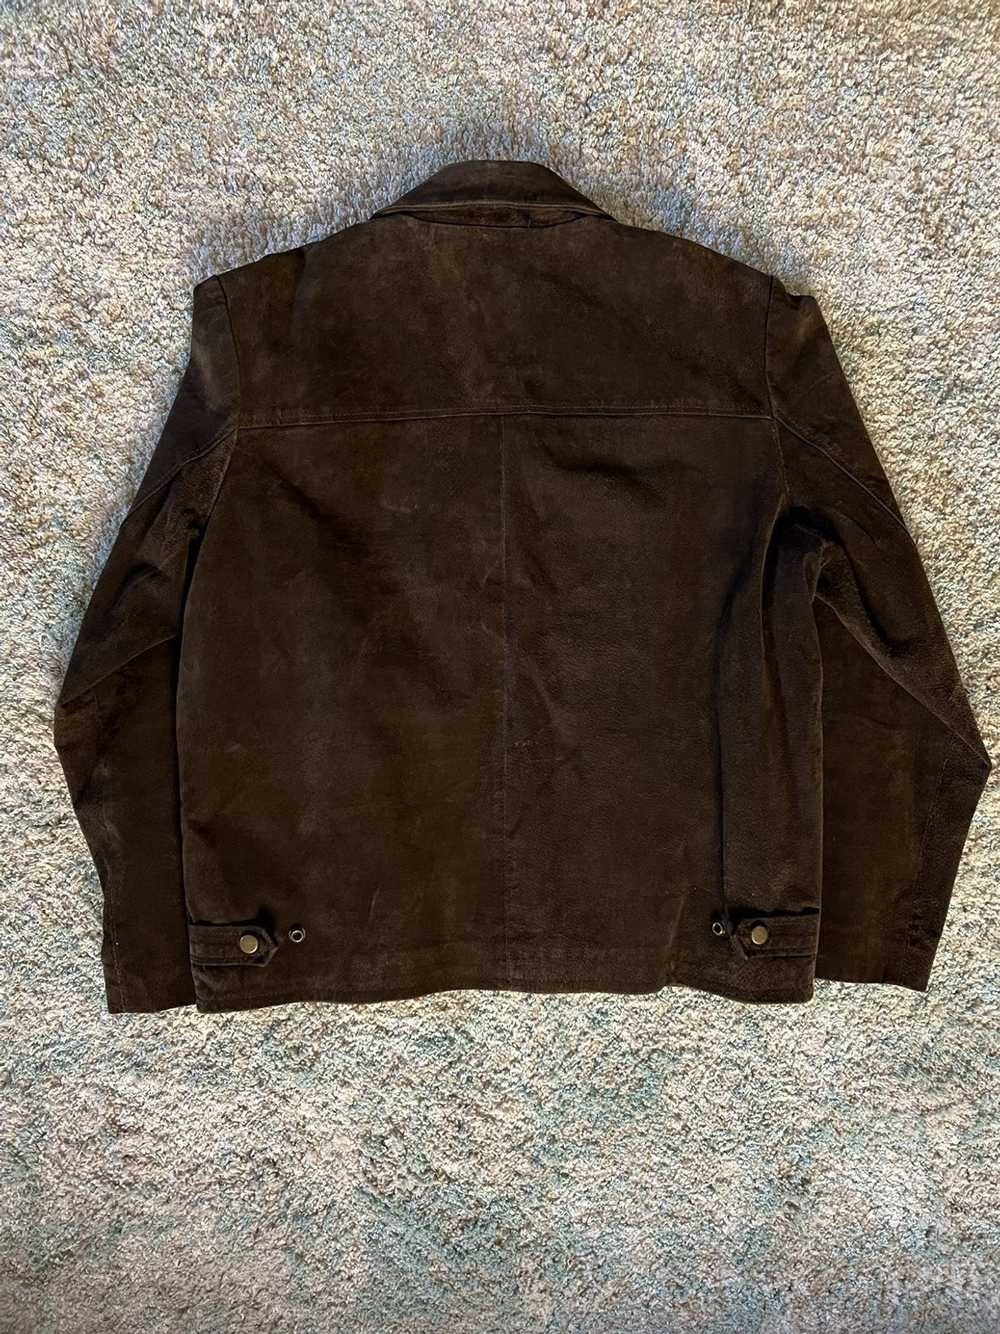 Leather Jacket × Vintage 70s leather jacket - image 2